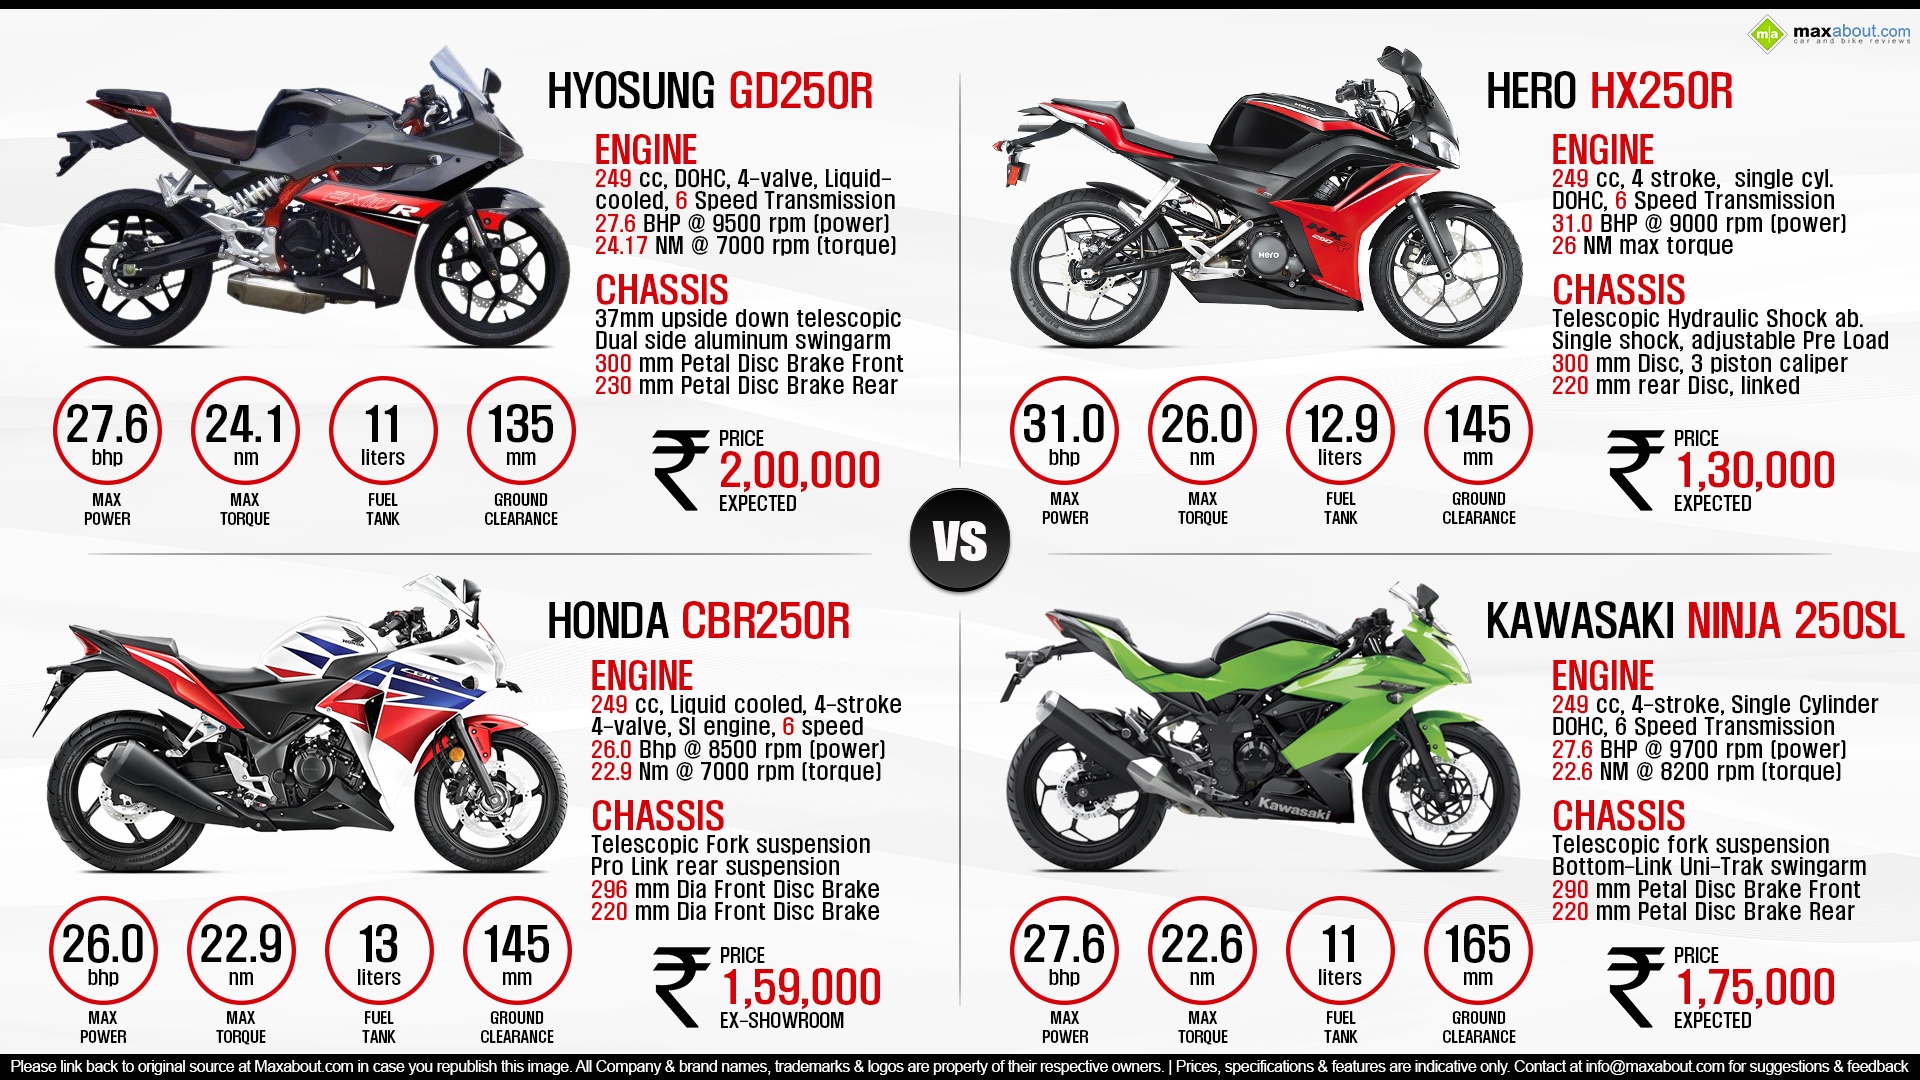 Hyosung GD250R vs. Honda vs. Hero HX250R vs. Kawasaki Ninja 250SL